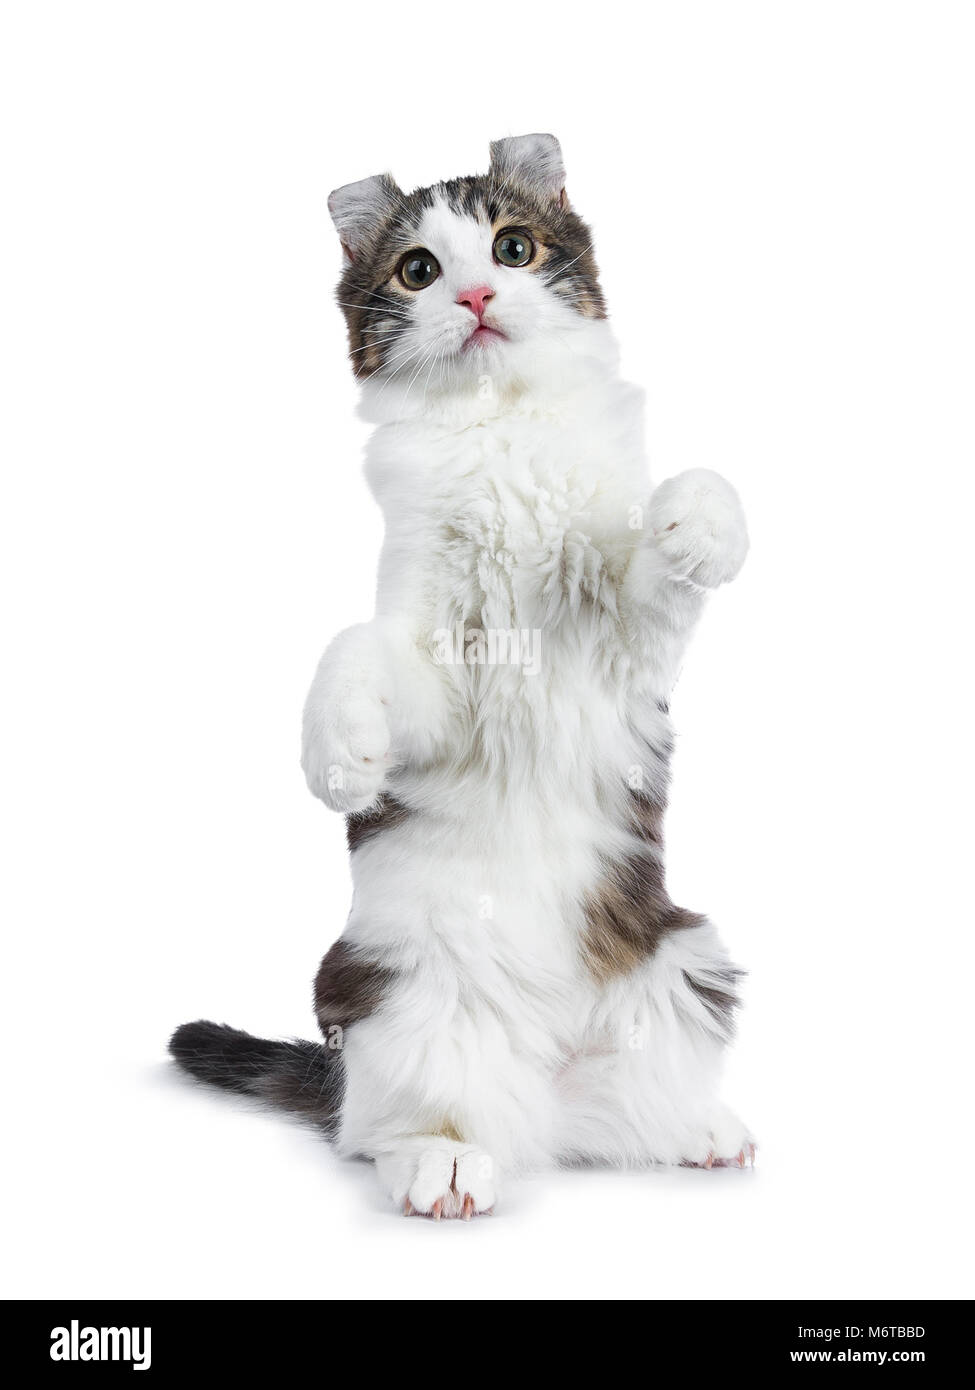 Black tabby con bianco American Curl cat / gattino in piedi sul retro le zampe come meerkat cercando in alla lente isolati su sfondo bianco. Foto Stock